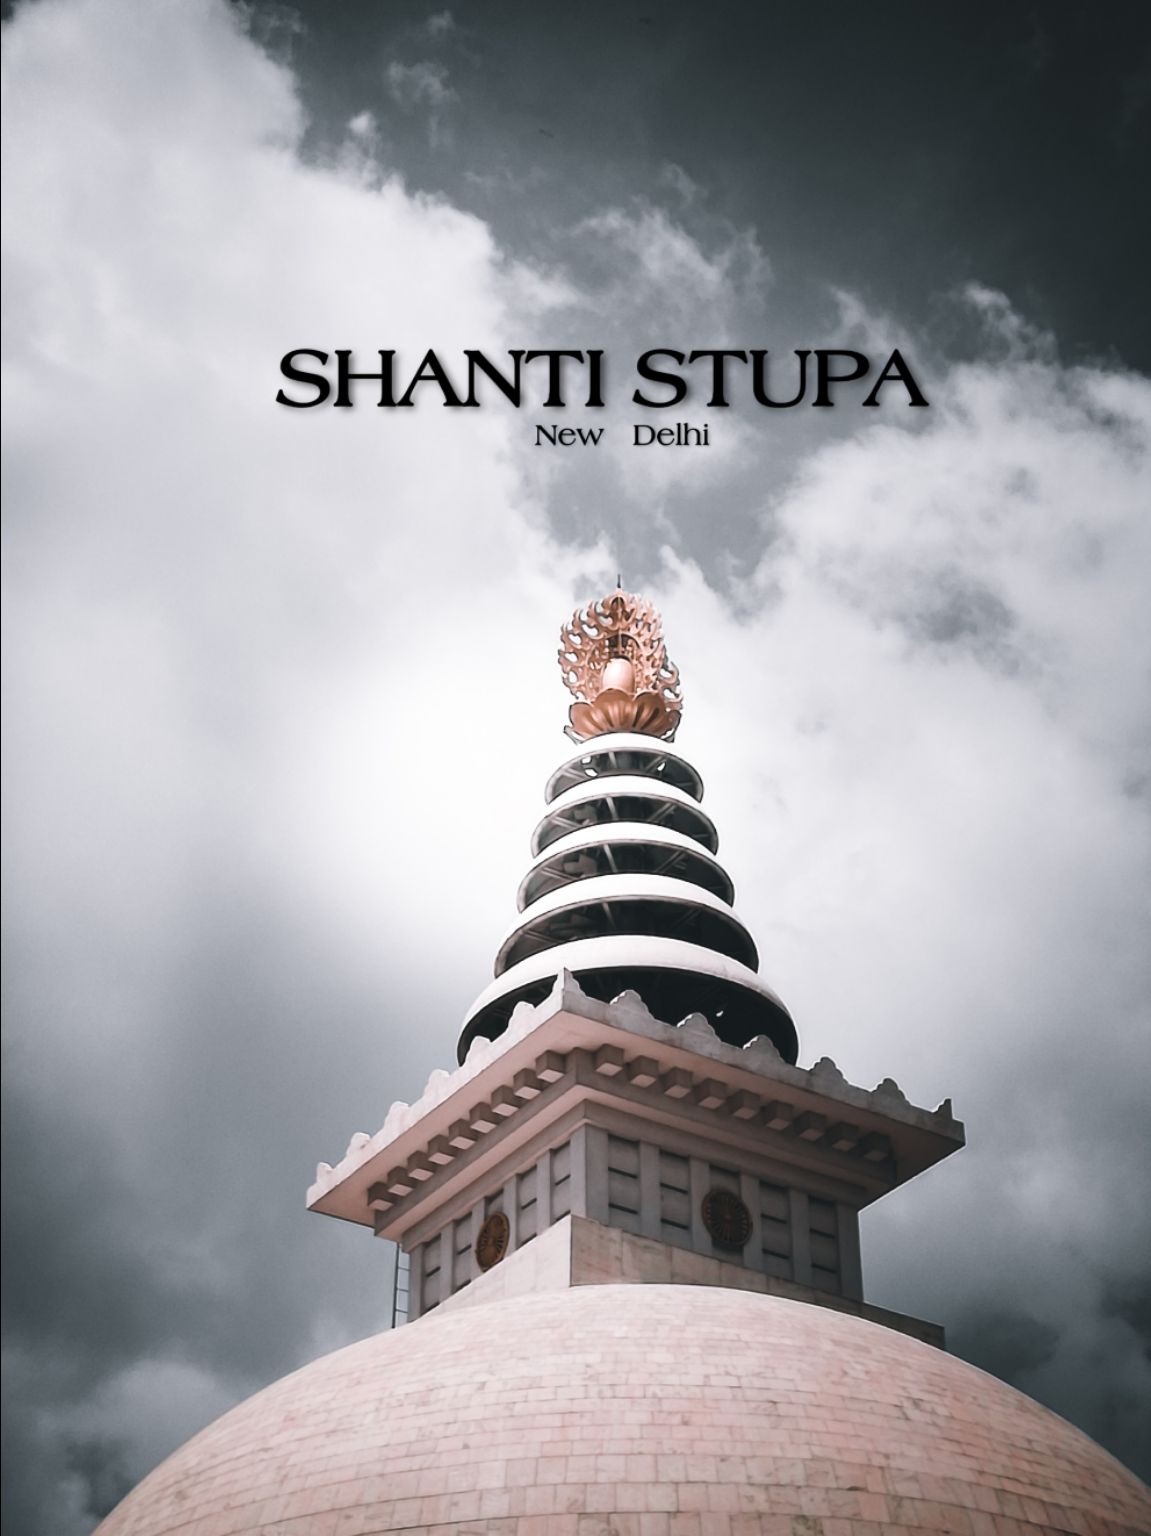 Photo of Shanti Stupa New Delhi By Shajid_1